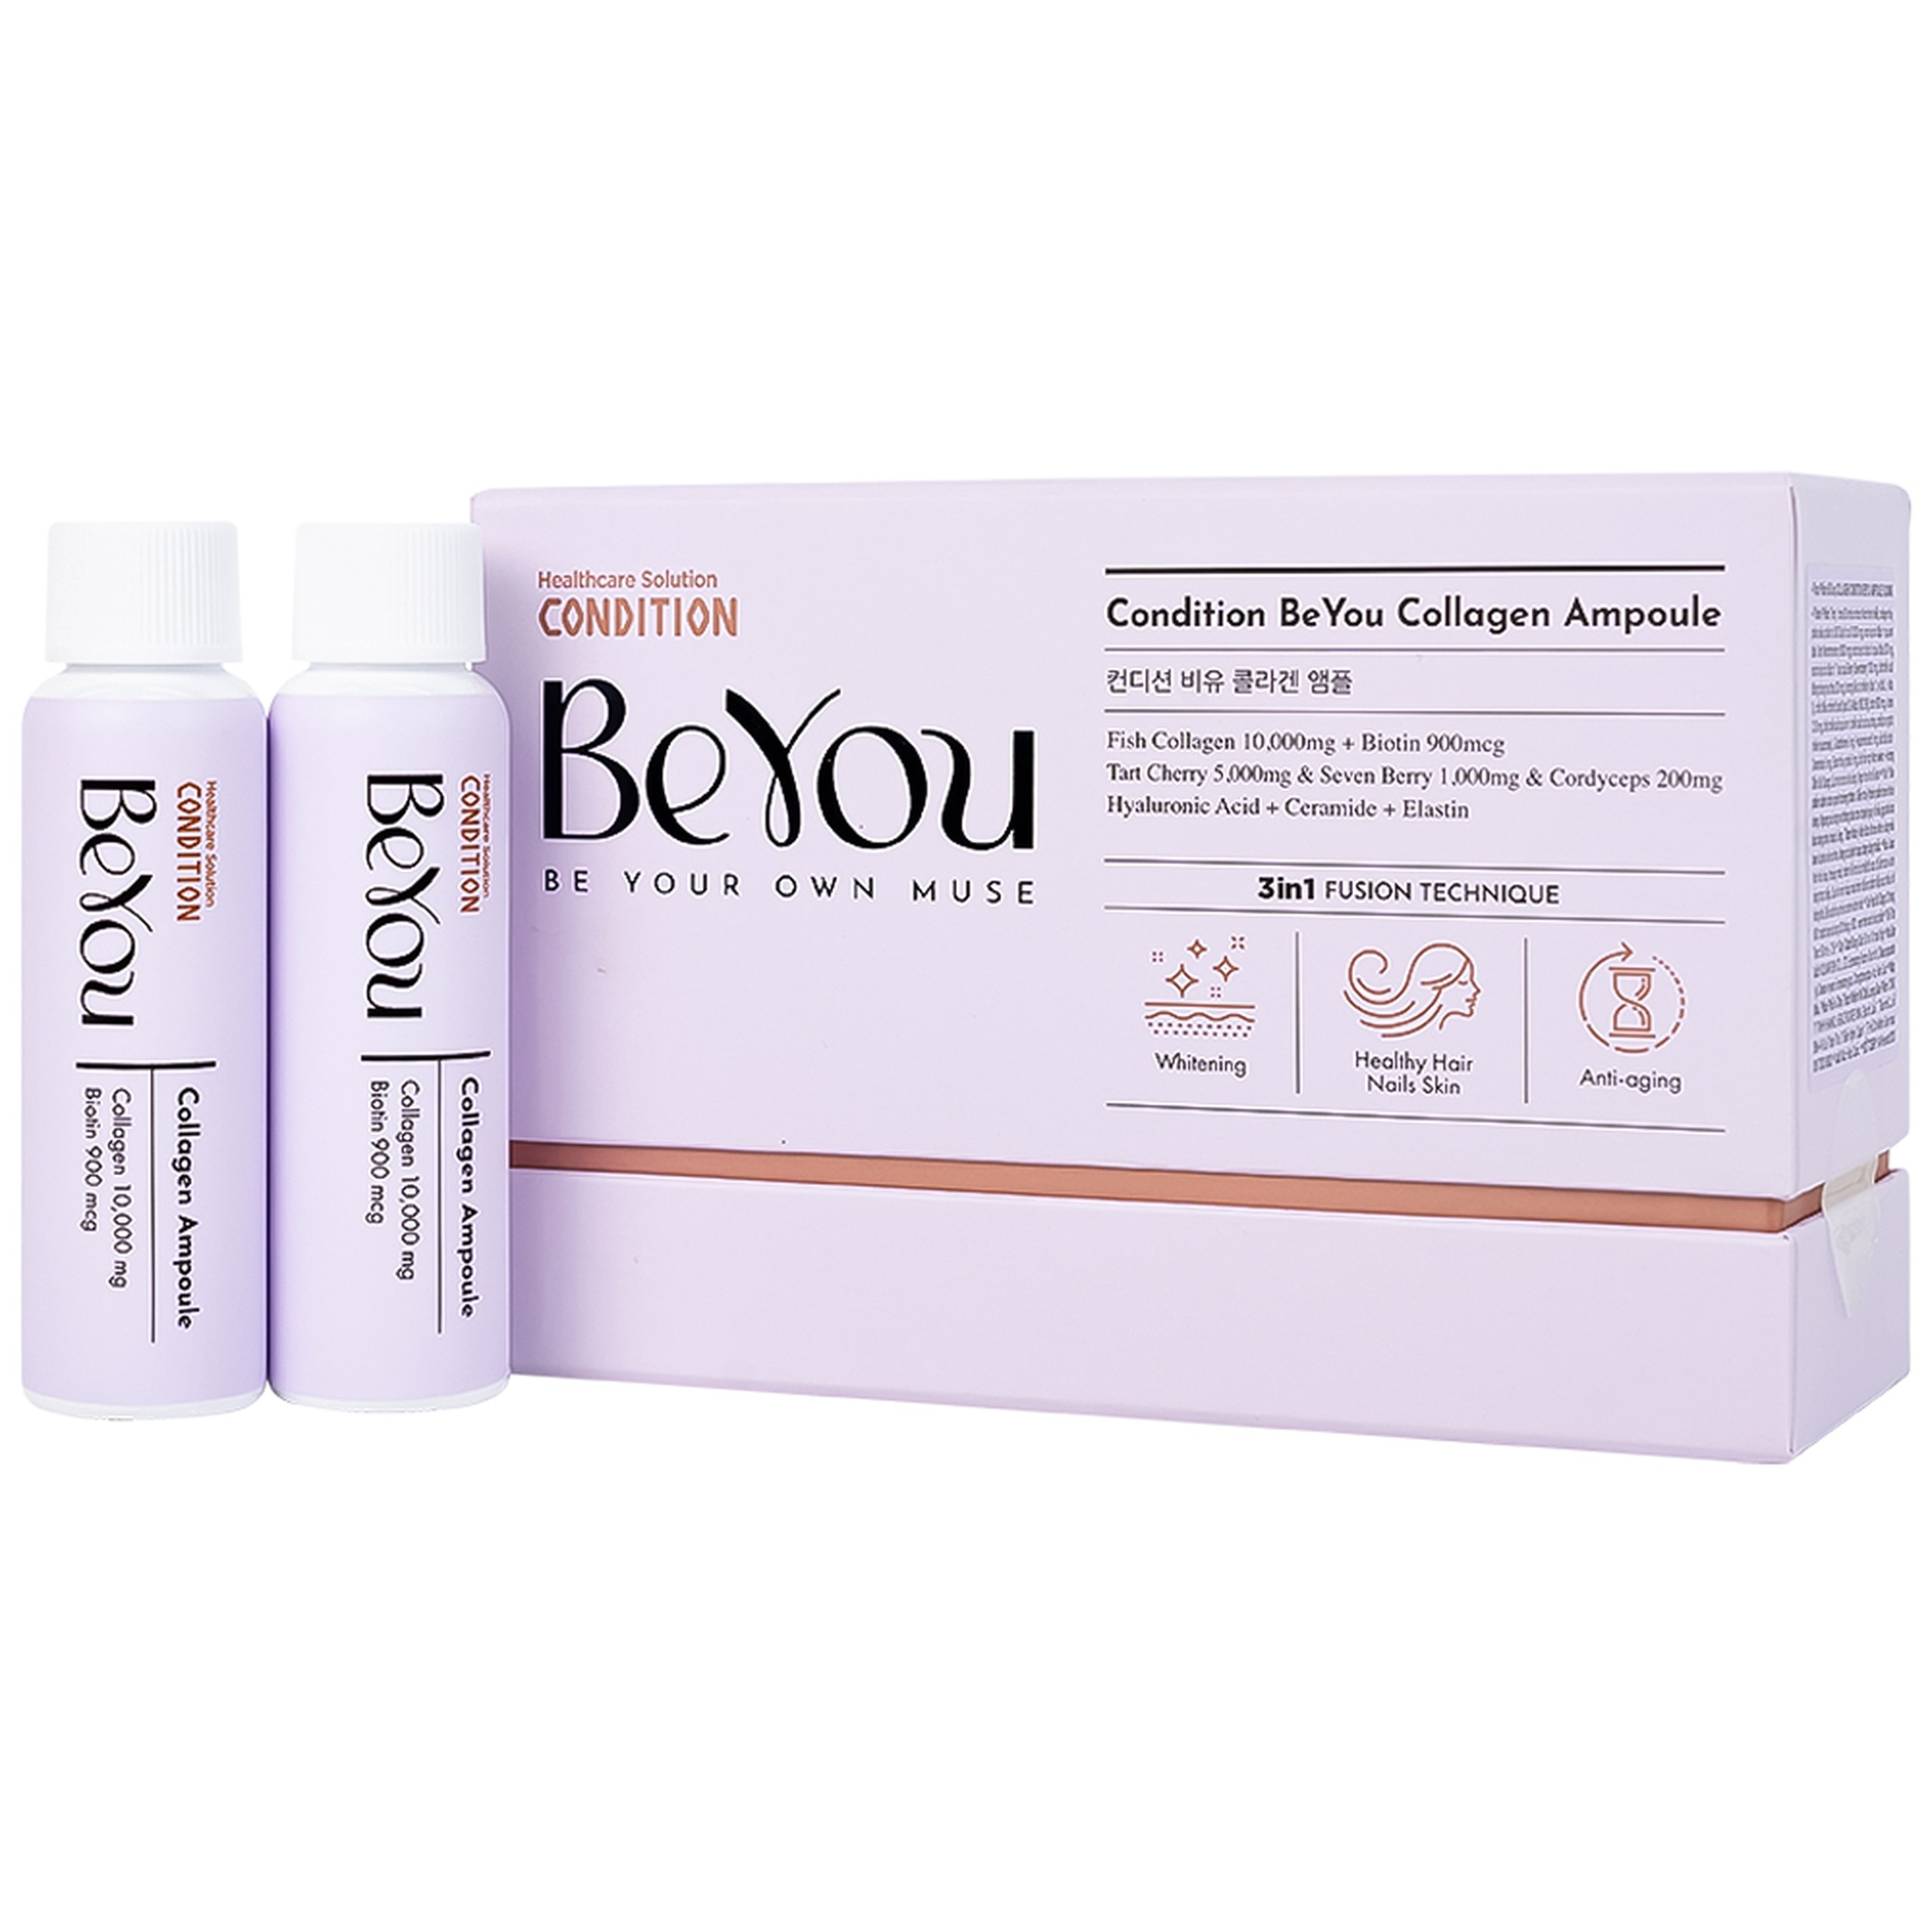 Thực phẩm bổ sung Collagen Condition Beyou Ampoule 10,000mg hỗ trợ làm trắng da, chống lão hóa (10 chai)